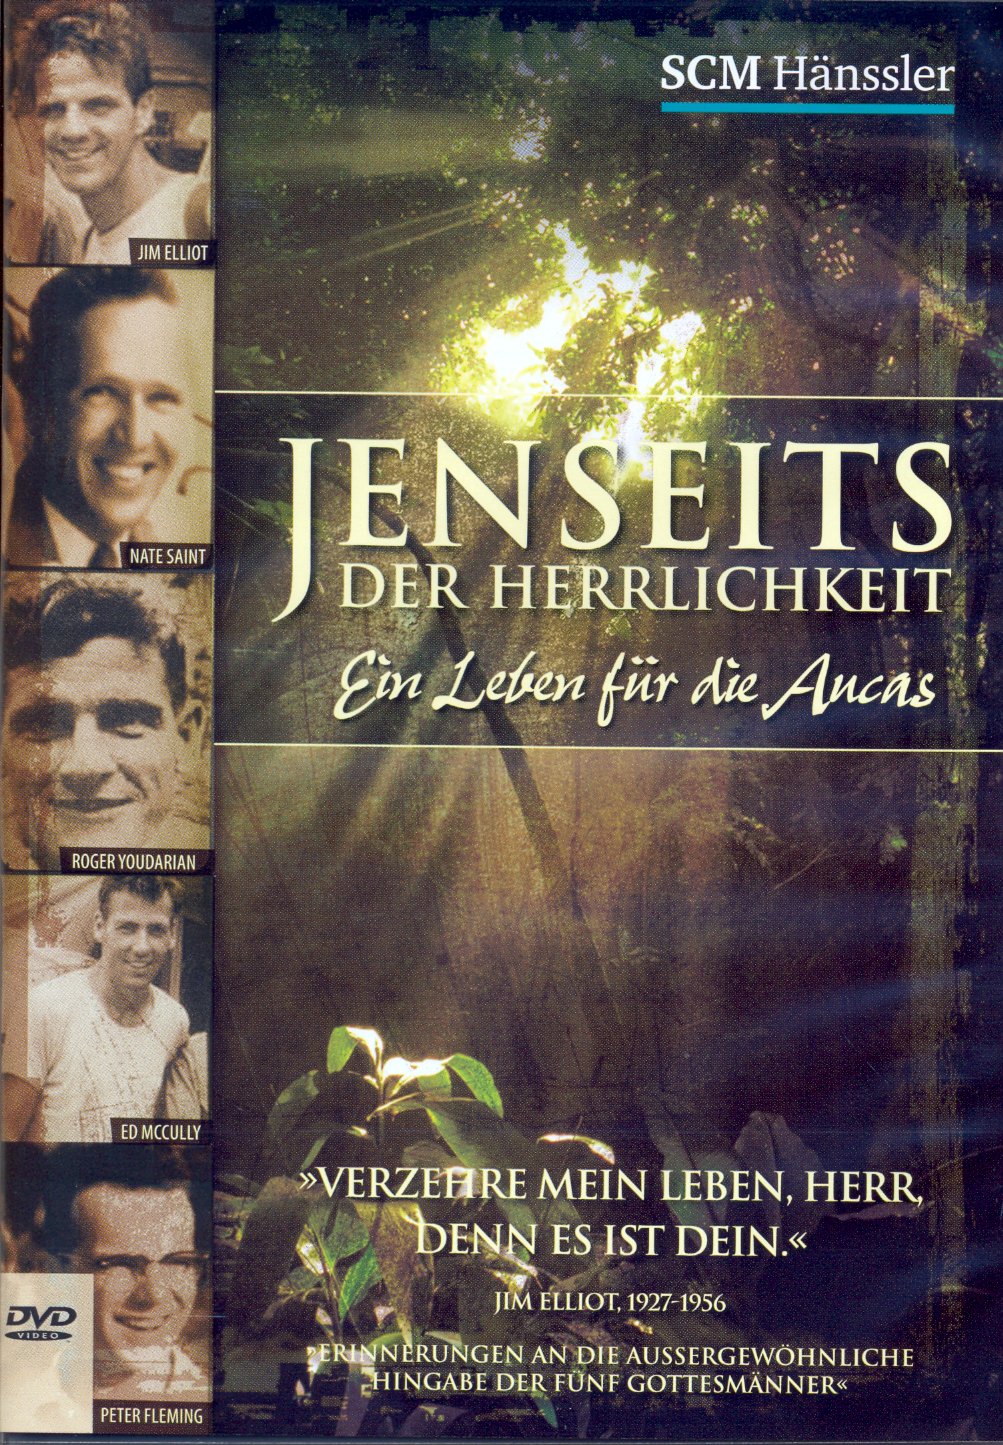 JENSEITS DER HERRLICHKEIT DVD - EIN LEBEN FÜR DIE AUCAS - DOKUMENTARFILM